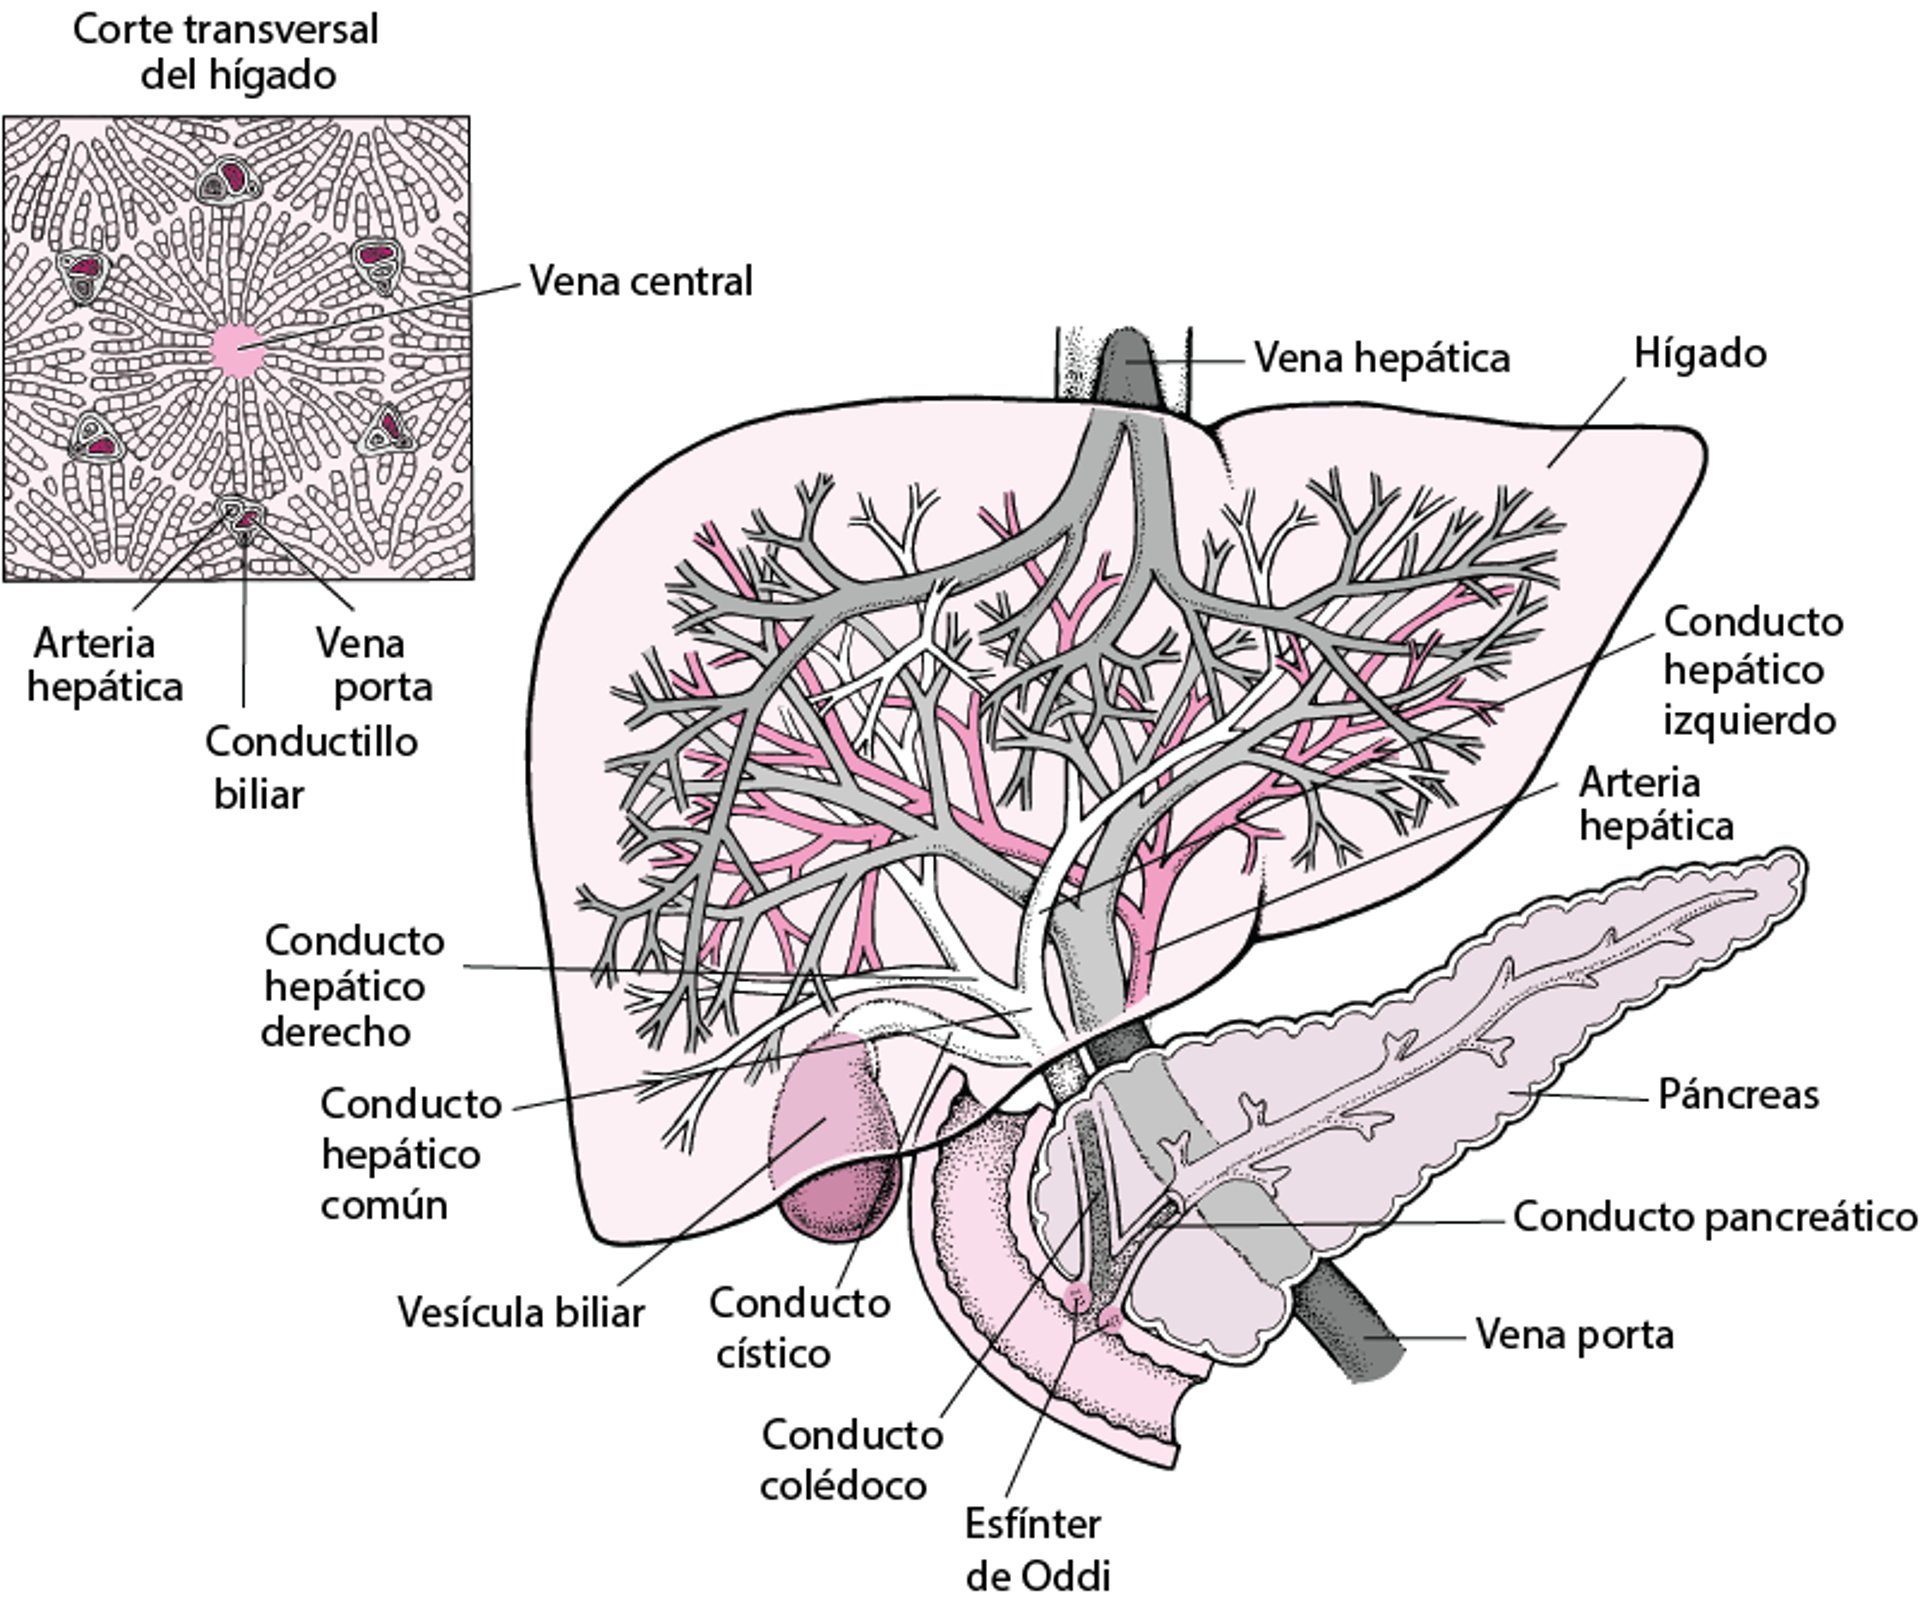 Vista del hígado y la vesícula biliar